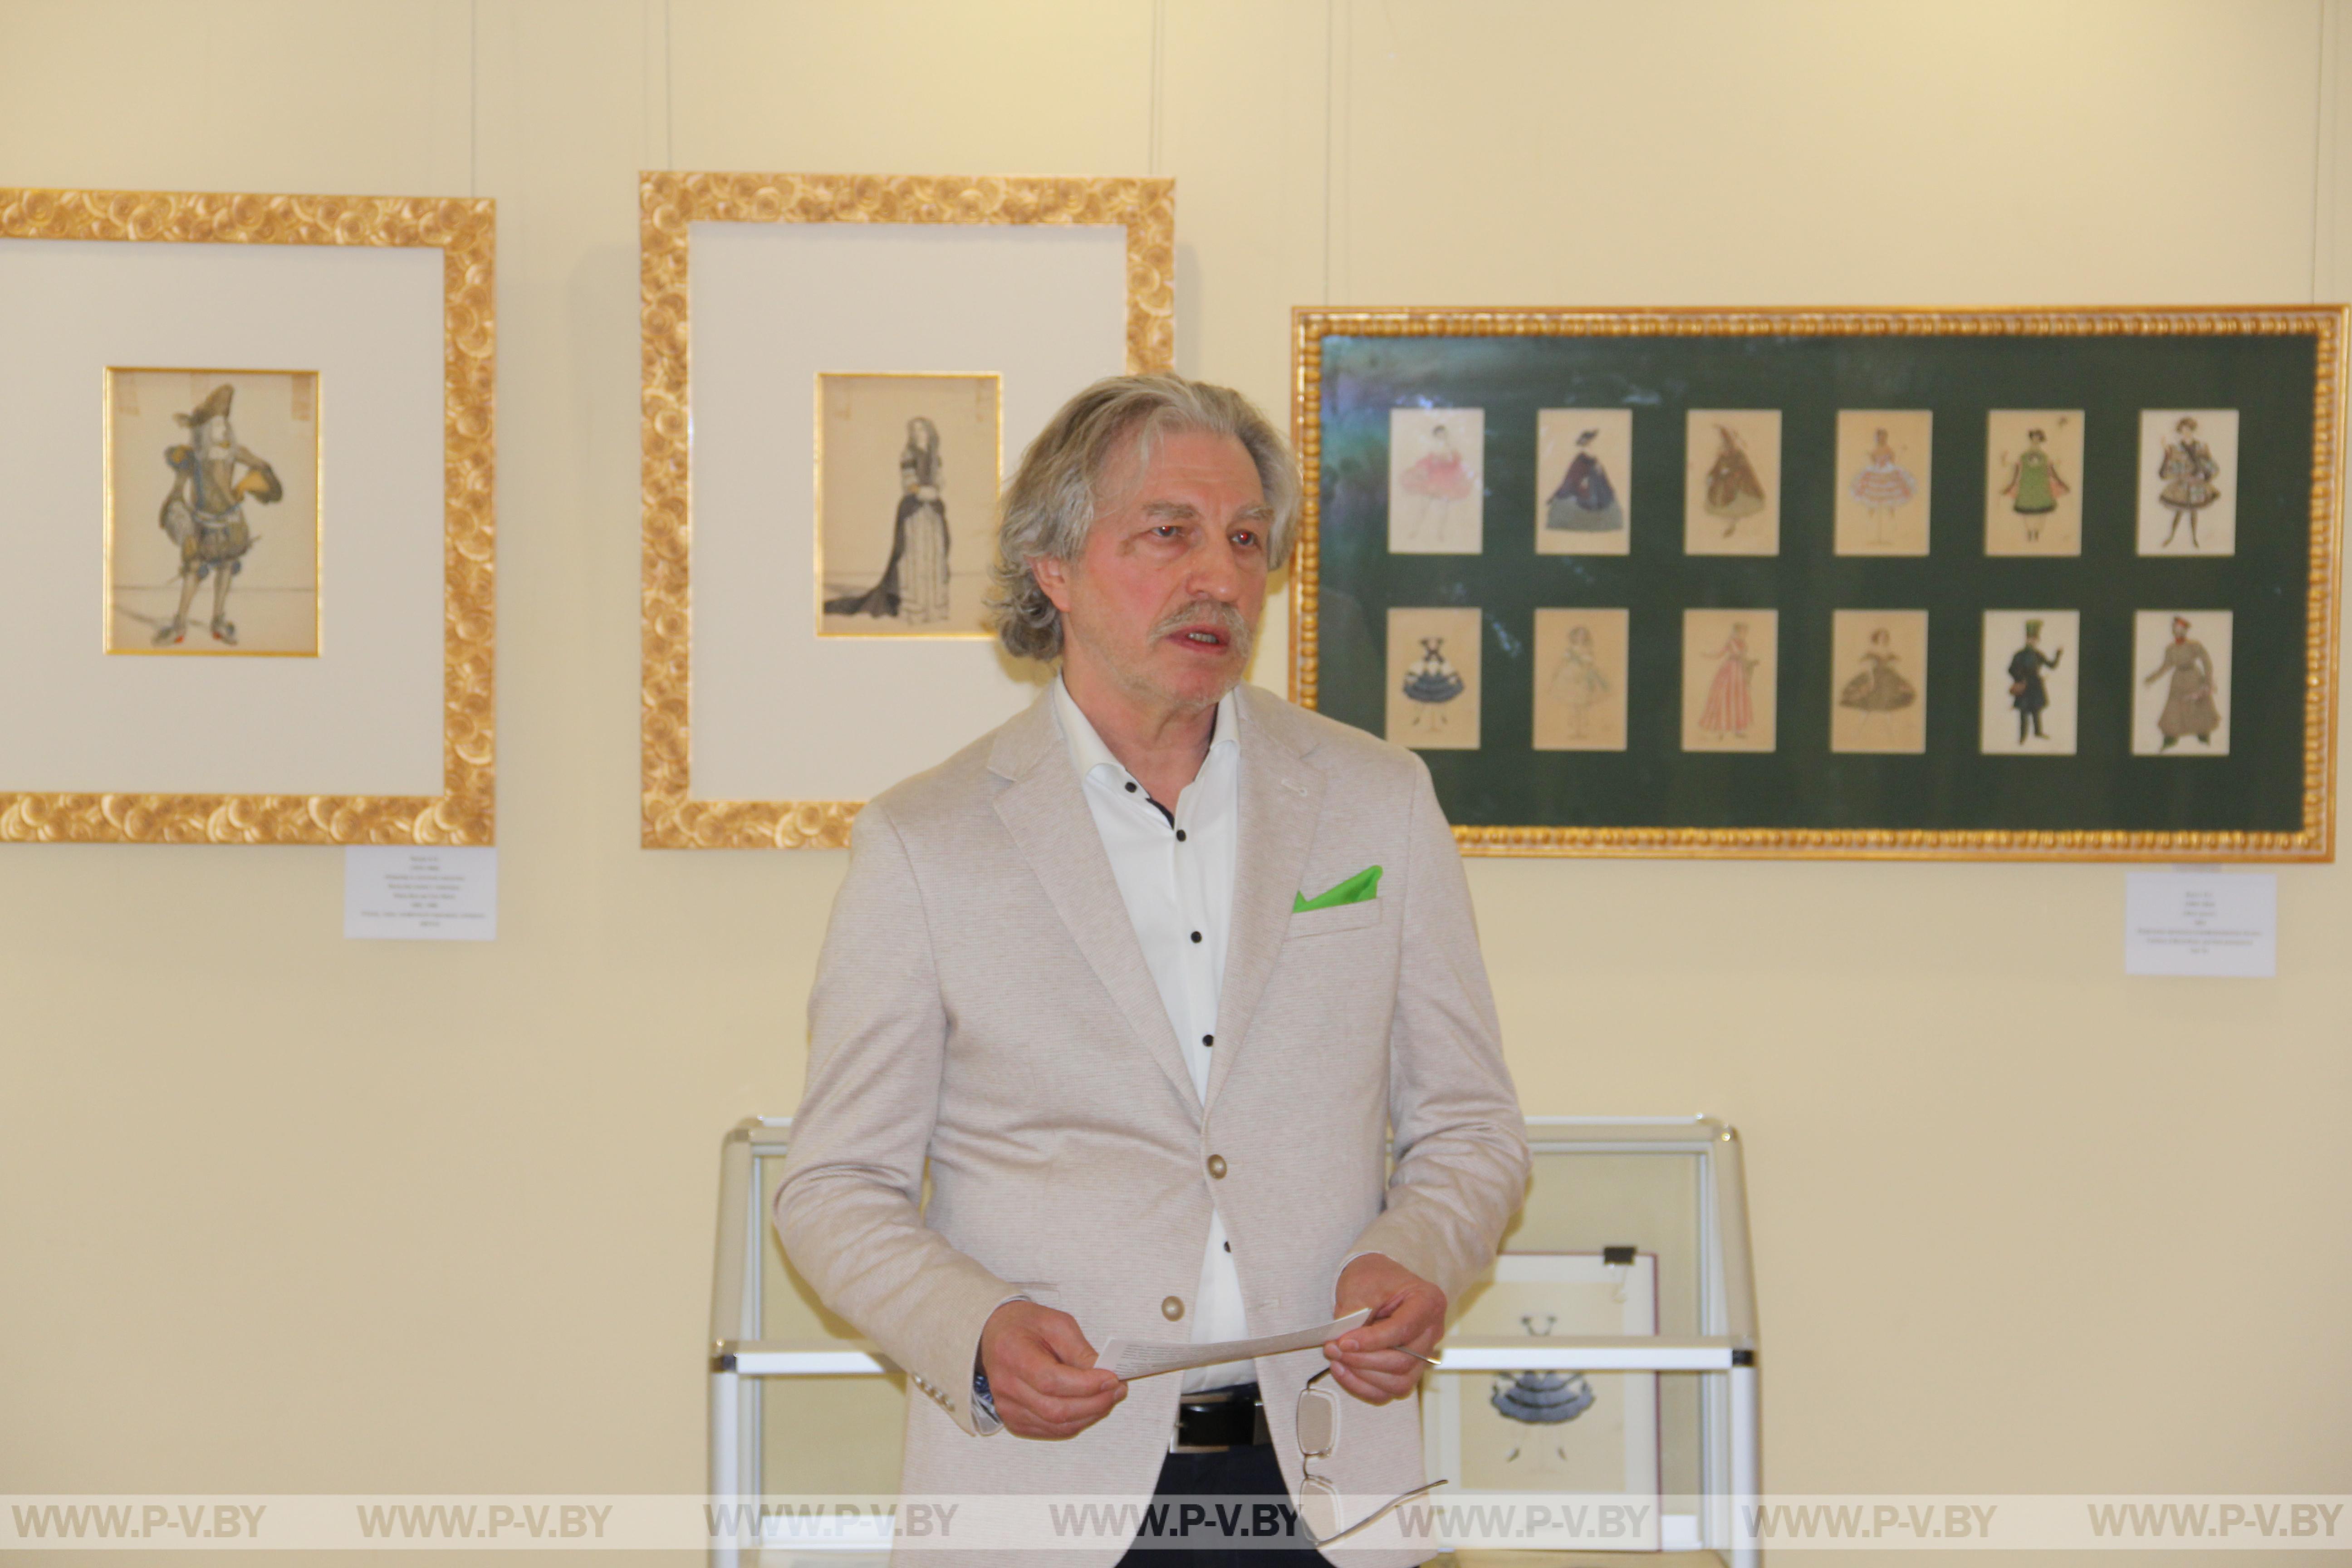 В Музее Белорусского Полесья открылась выставка живописи, акварели и графики из частного собрания Николая Дудко